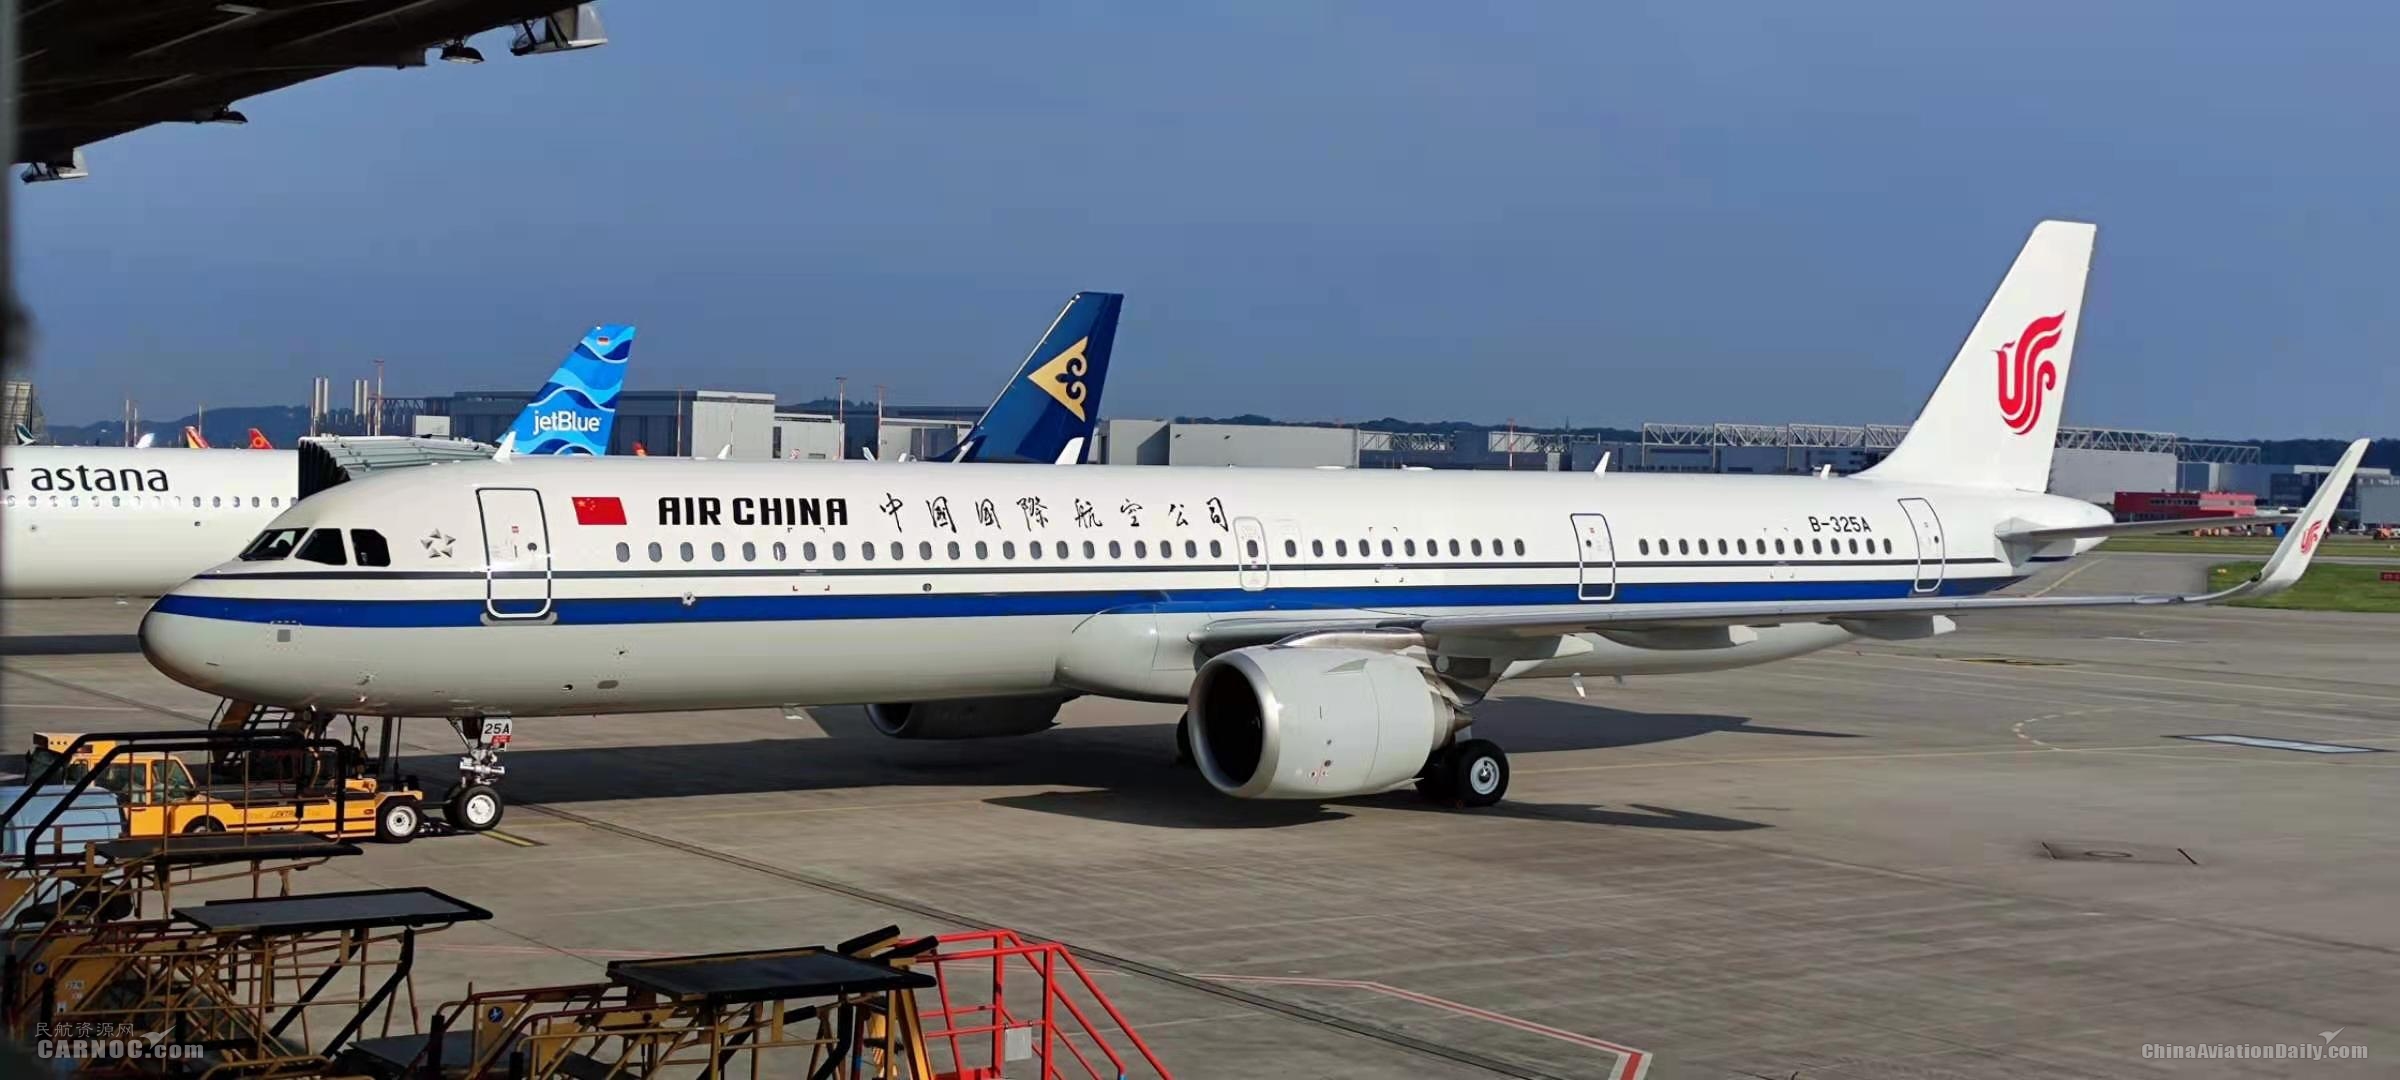 国航西南a320机队迎来两架新飞机_中国航空新闻网